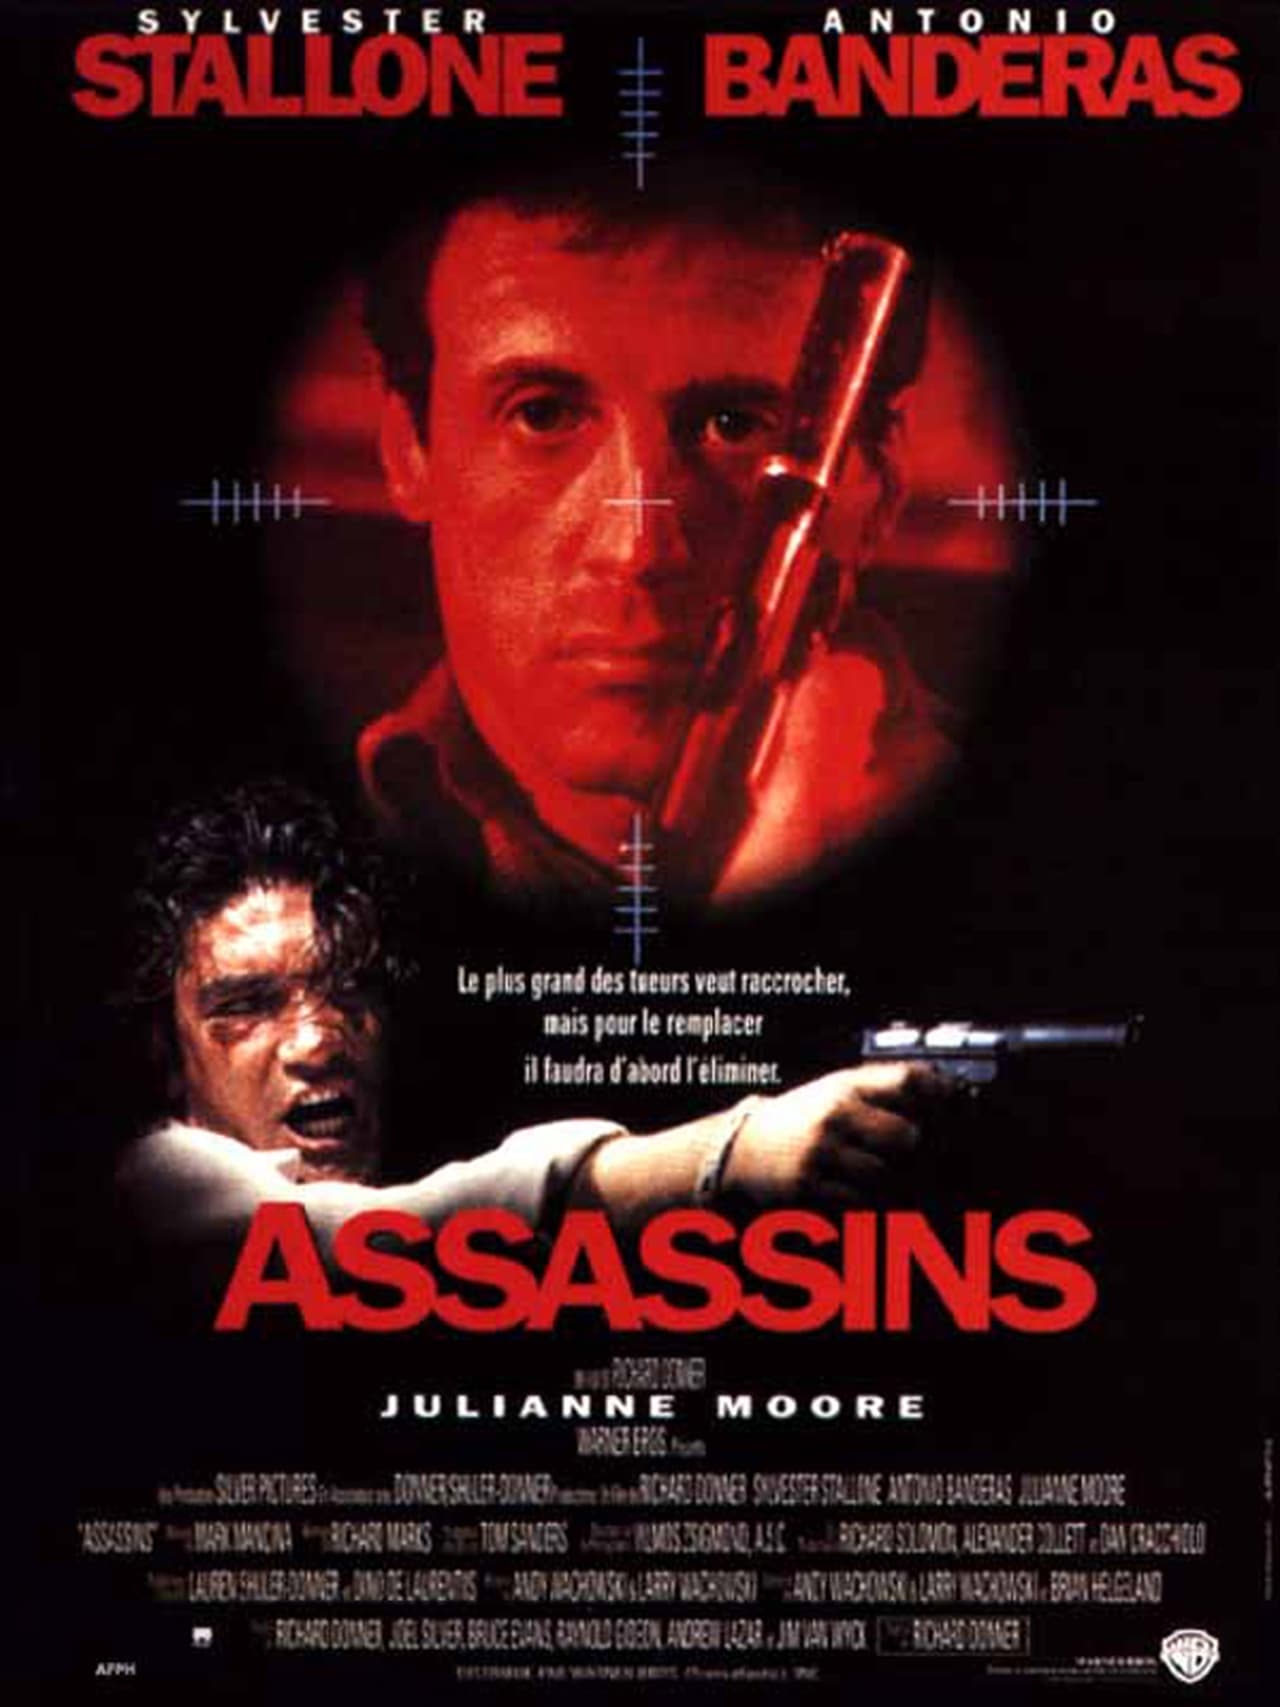 Assassins (1995) 448Kbps 23.976Fps 48Khz 5.1Ch DVD Turkish Audio TAC